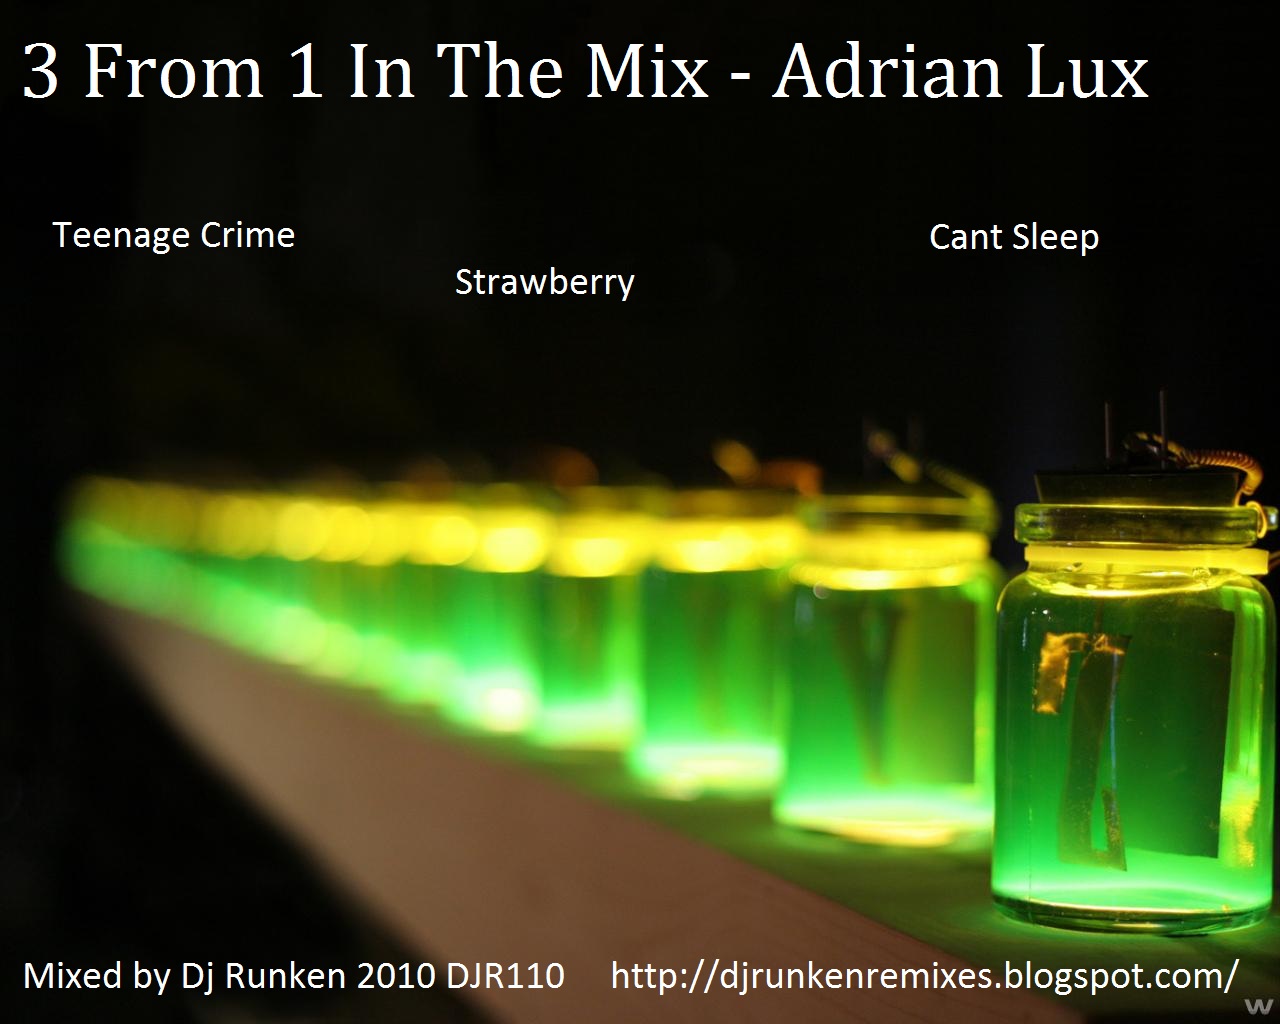 http://2.bp.blogspot.com/_AlmcyK69Pl4/TL9WnPQwKKI/AAAAAAAAAZ4/j35kSUlm_Ck/s1600/3+From+1+In+The+Mix+-+Adrian+Lux+(2010).jpg